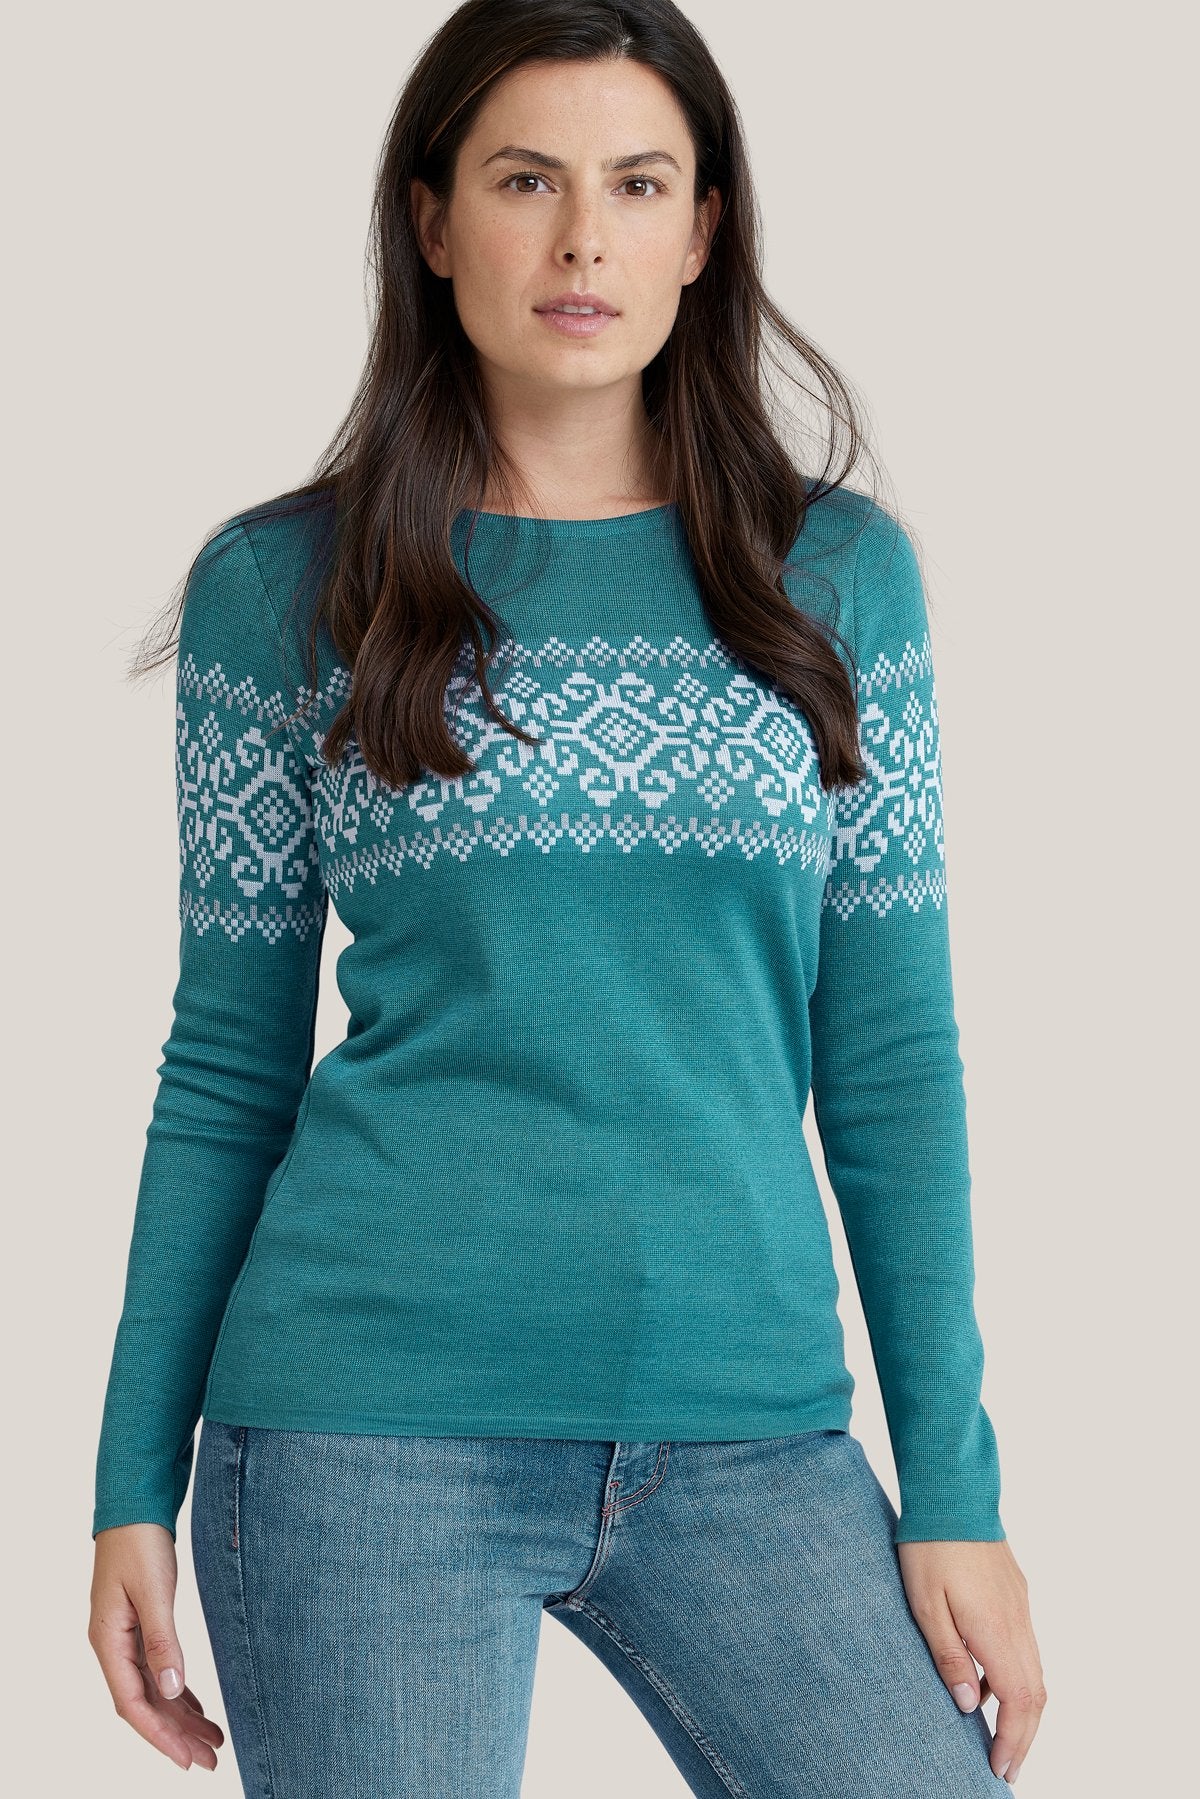 Freya SweaterSweaterXS